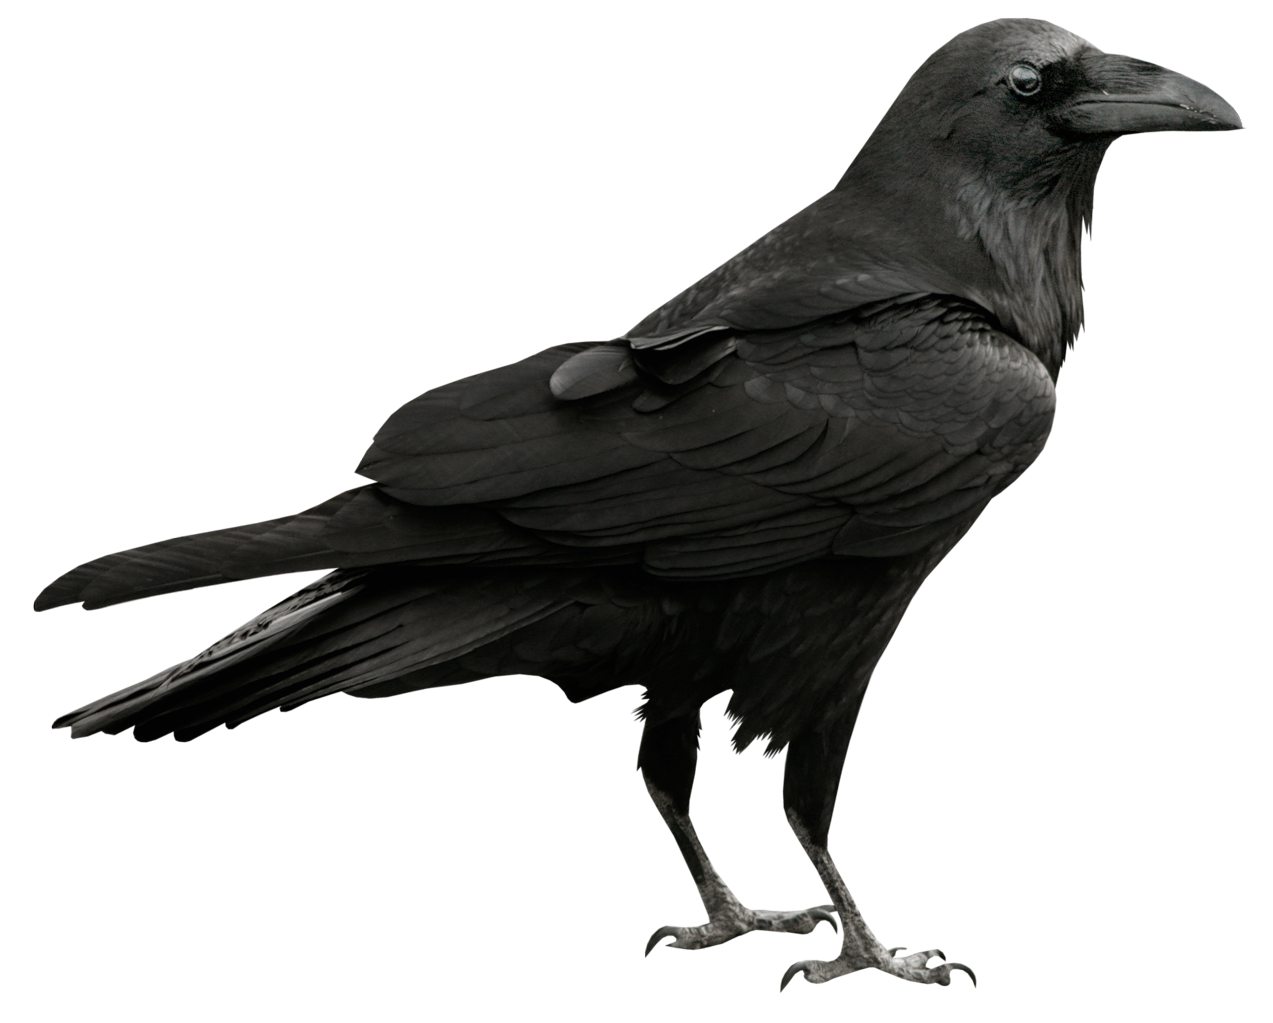 Raven #20